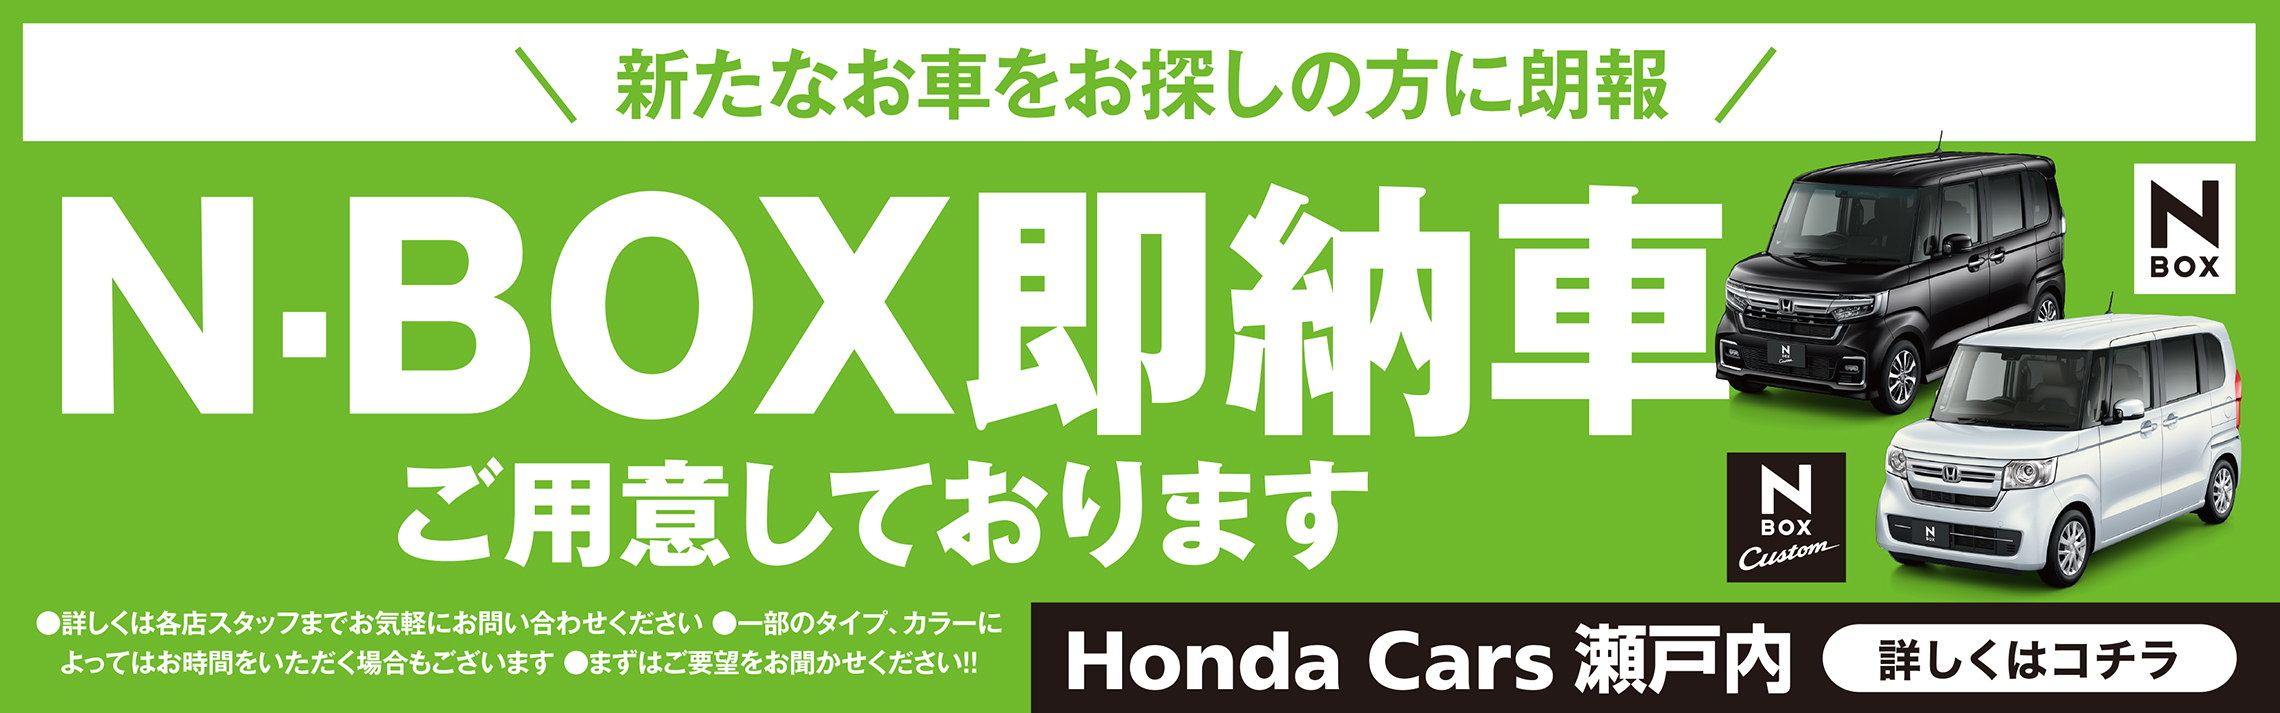 新たなお車をお探しの方に朗報 N-BOX即納車ご用意しております 詳しくは各店スタッフまでお気軽にお問い合わせください 一部のタイプ、カラーによってはお時間をいただく場合もございます まずはご要望をお聞かせください!! N-BOX N-BOX Custom 詳しくはコチラ Honda Cars 瀬戸内